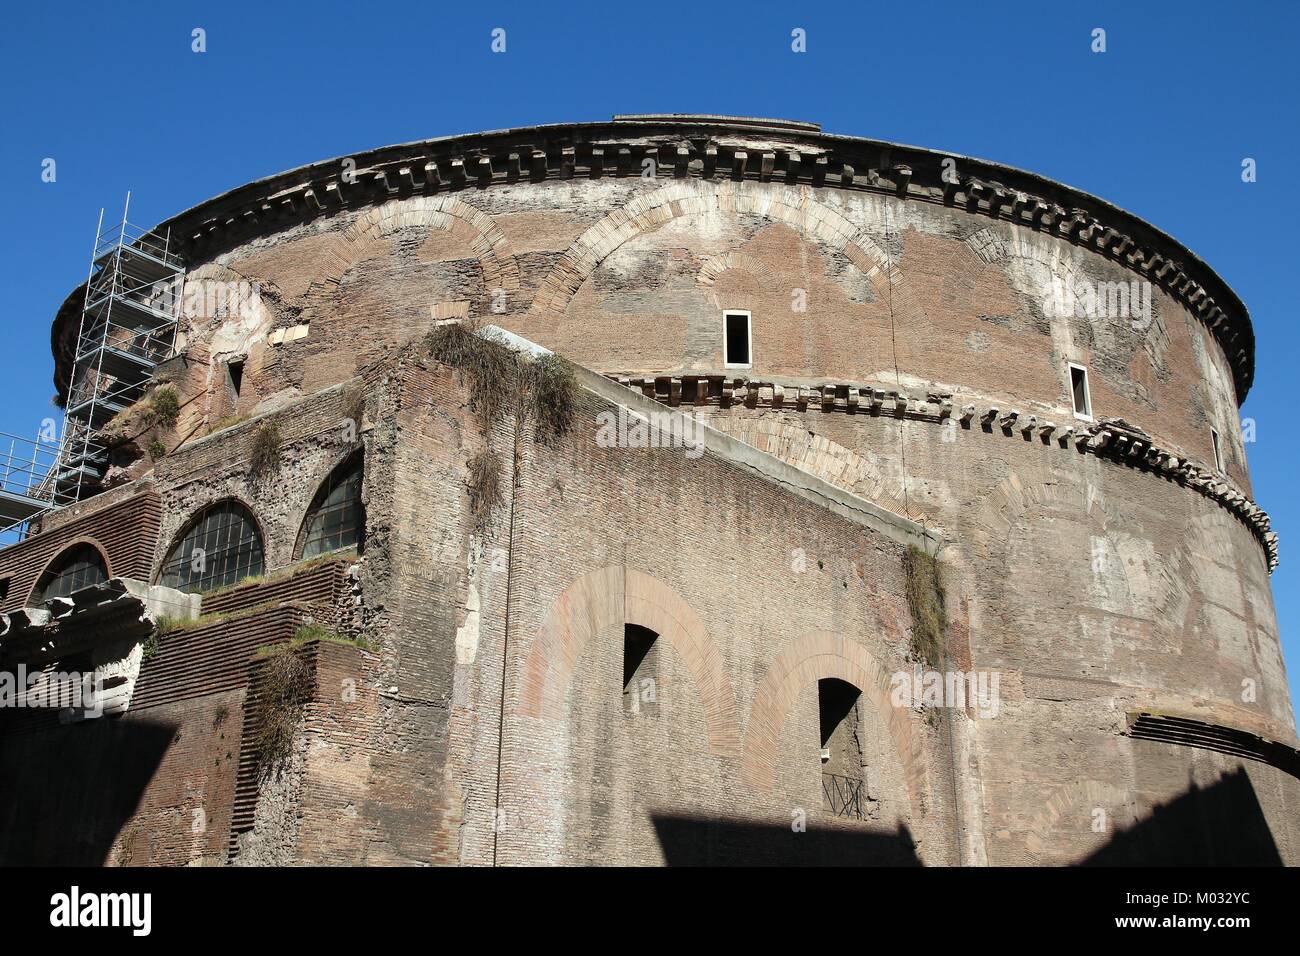 Rome, Italie - Panthéon, célèbre ancienne église avec plus grand dôme en béton non armé dans le monde Banque D'Images